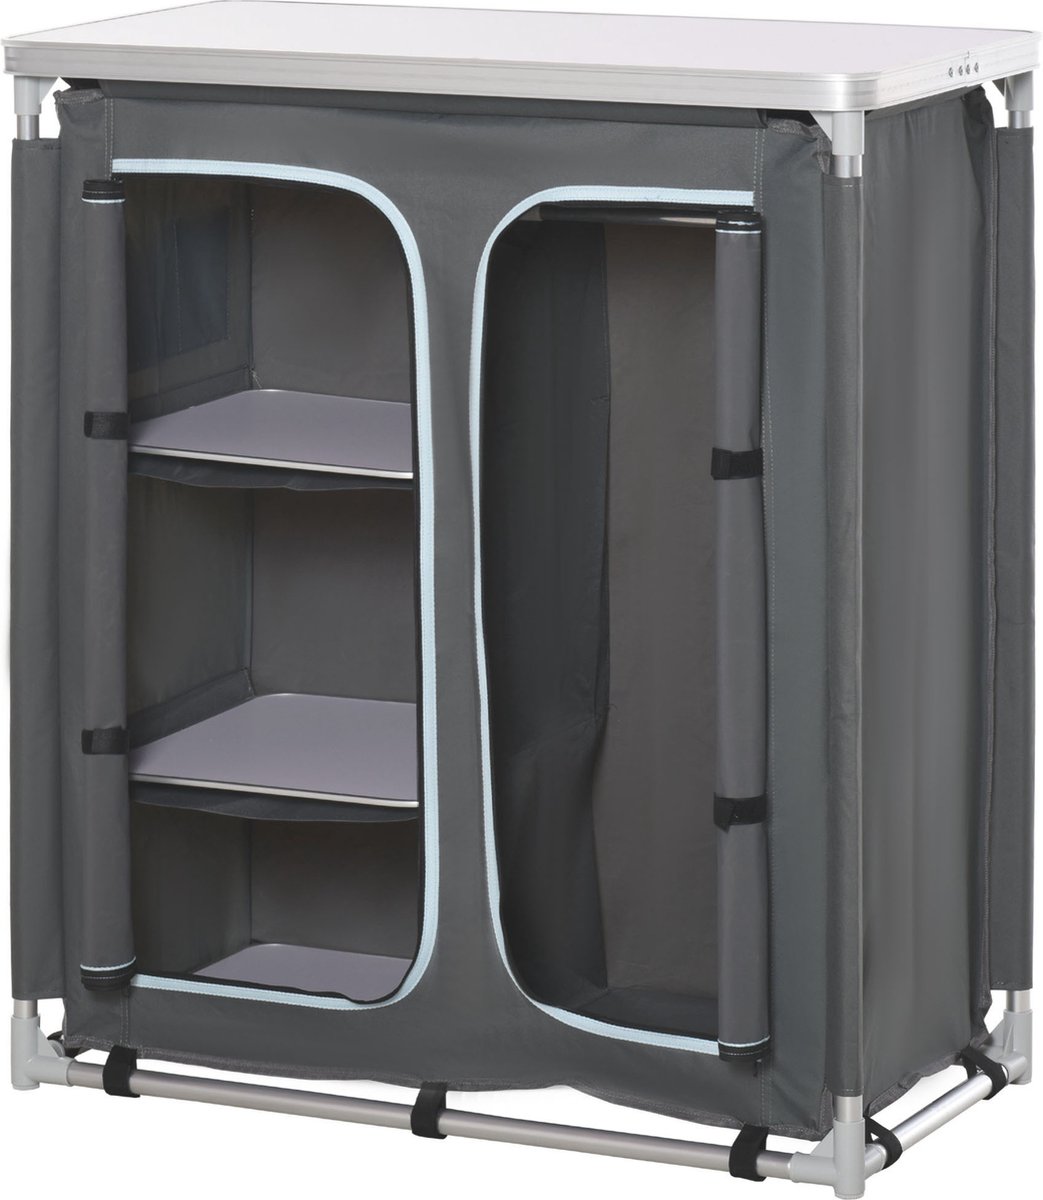 Outsunny Campingkast inklapbaar keukenbox draagbaar met 3 planken 1 kast grijs A20-159